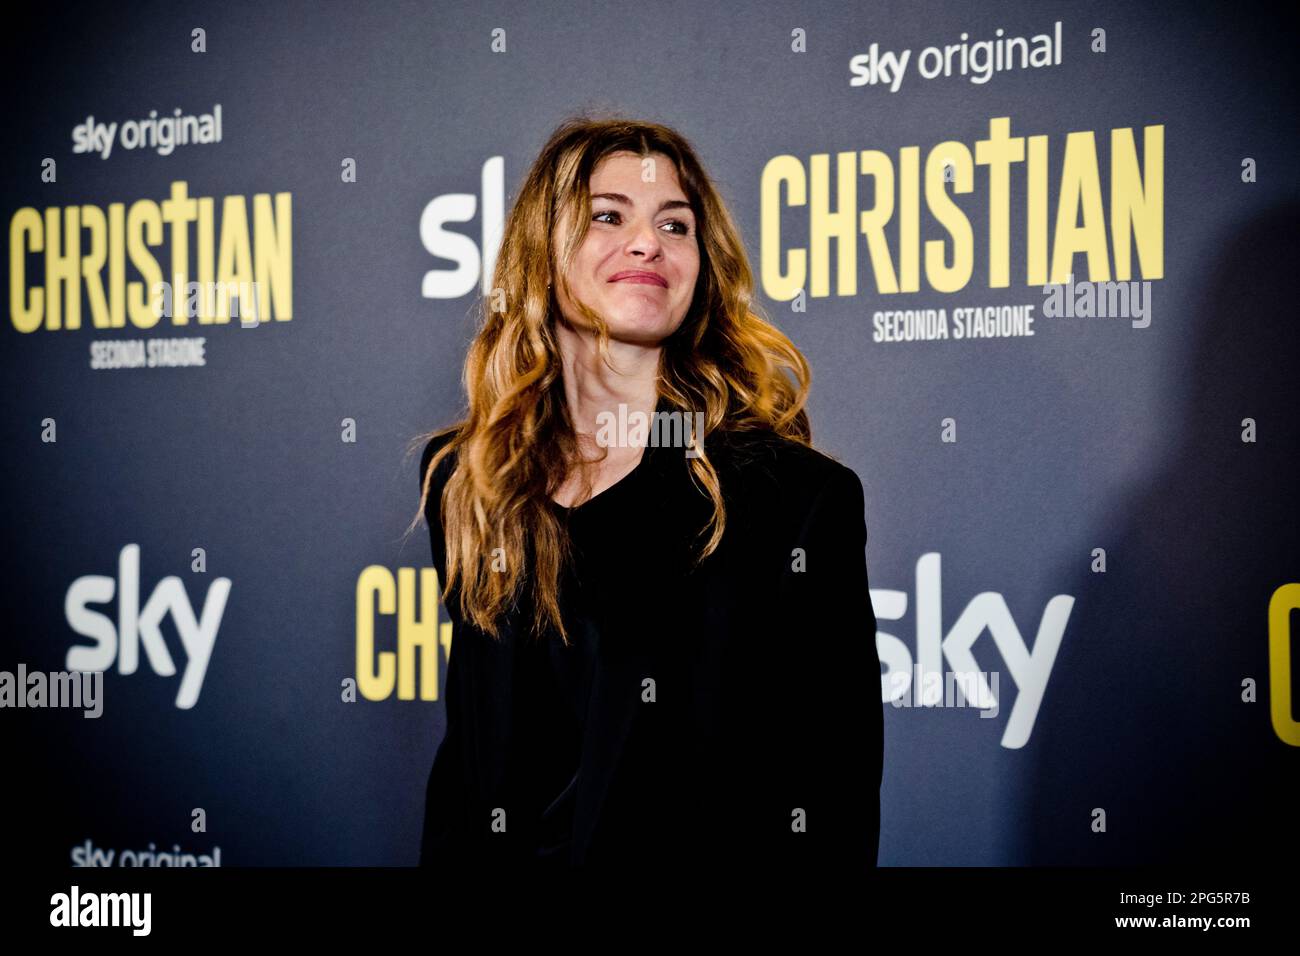 Rome, Italy, 20th March 2023, Vittoria Puccini attends the premiere of 'Christian - seconda stagione' at Cinema Barberini (Photo credits: Giovanna Ono Stock Photo